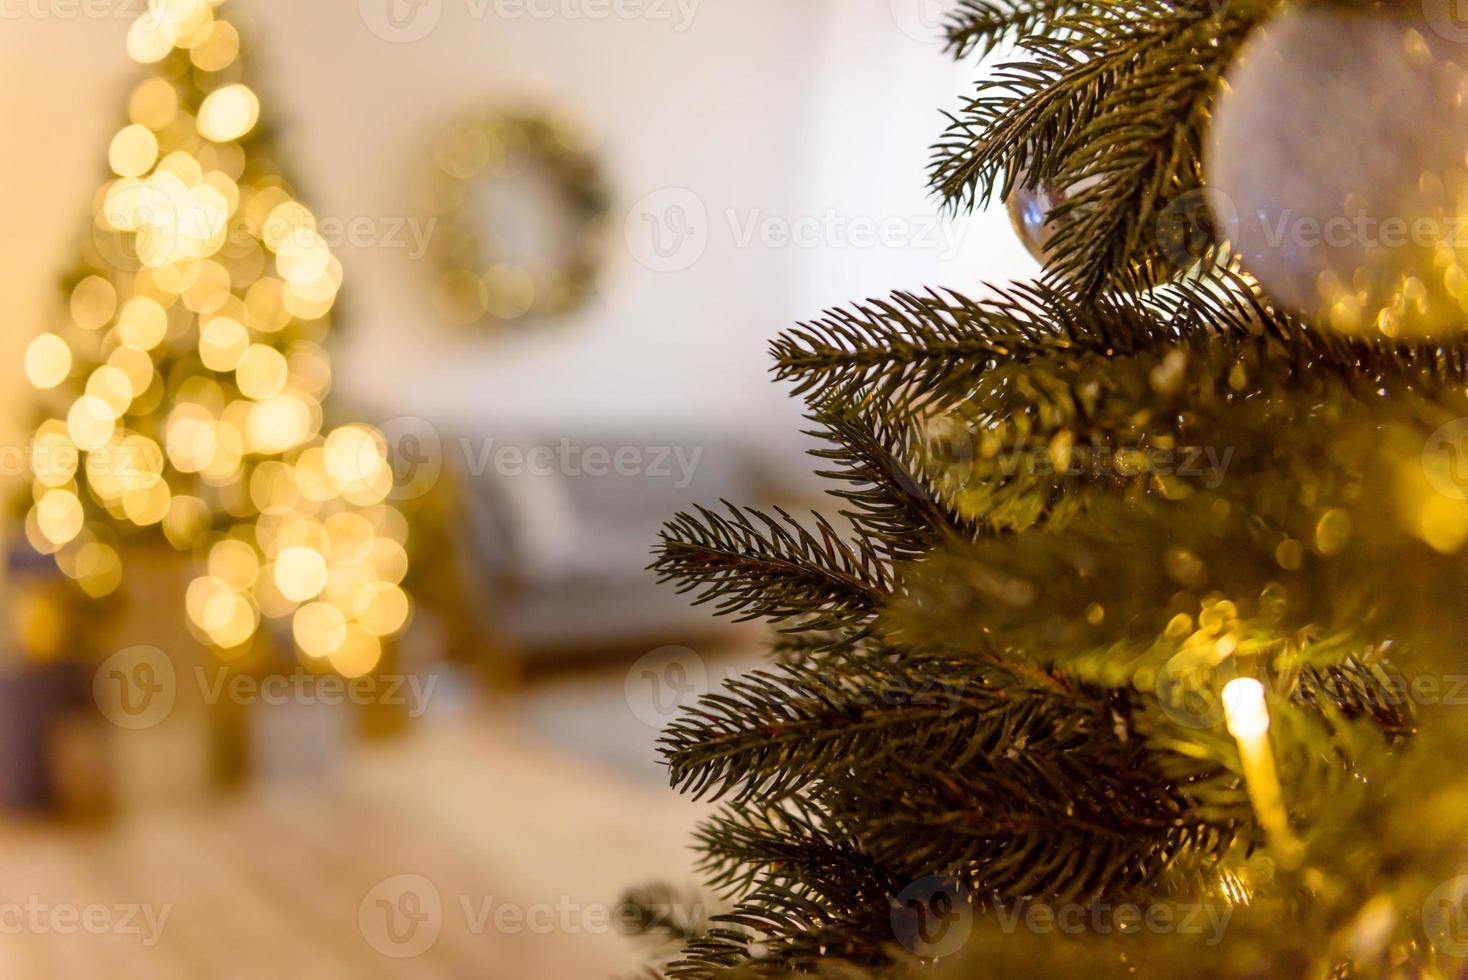 kerstmis defocus feestelijk ontwerp, onscherpe slingerlichten foto